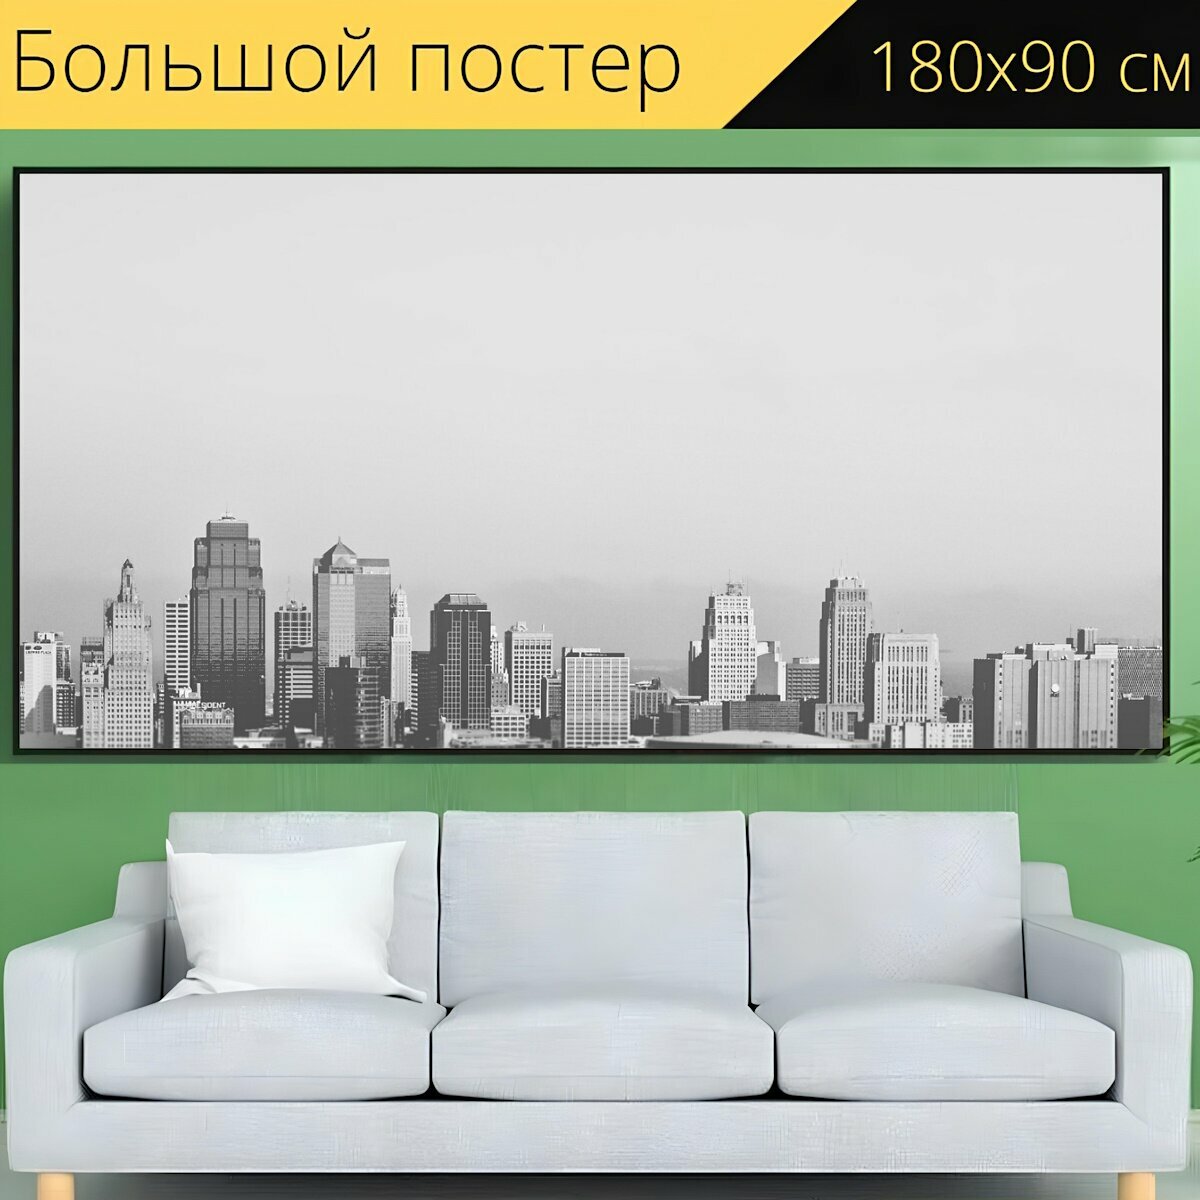 Большой постер "Небоскребы, здания, метрополь" 180 x 90 см. для интерьера